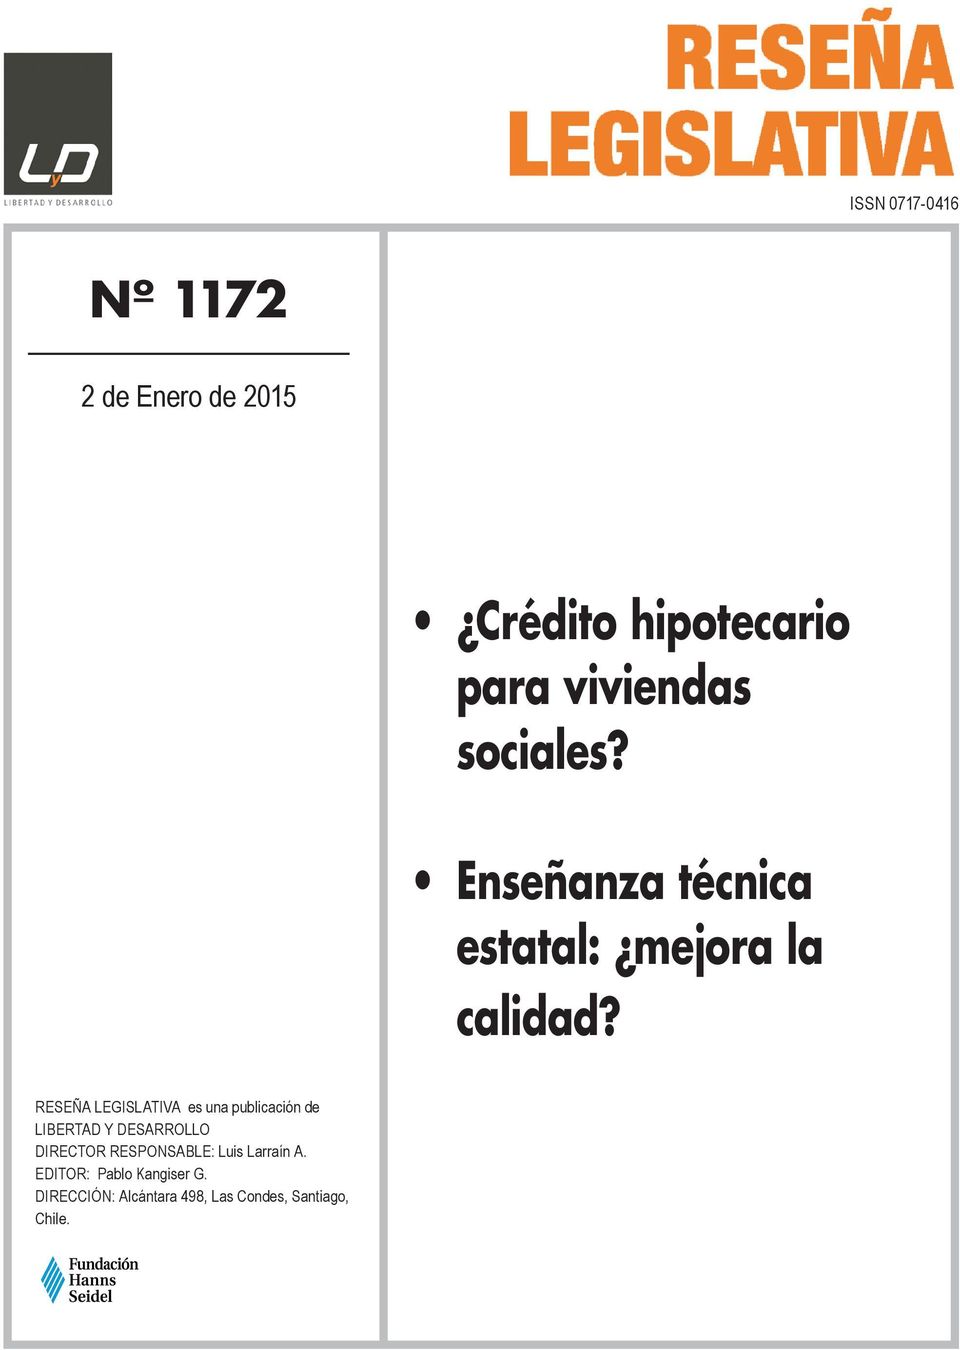 RESEÑA LEGISLATIVA es una publicación de LIBERTAD Y DESARROLLO DIRECTOR